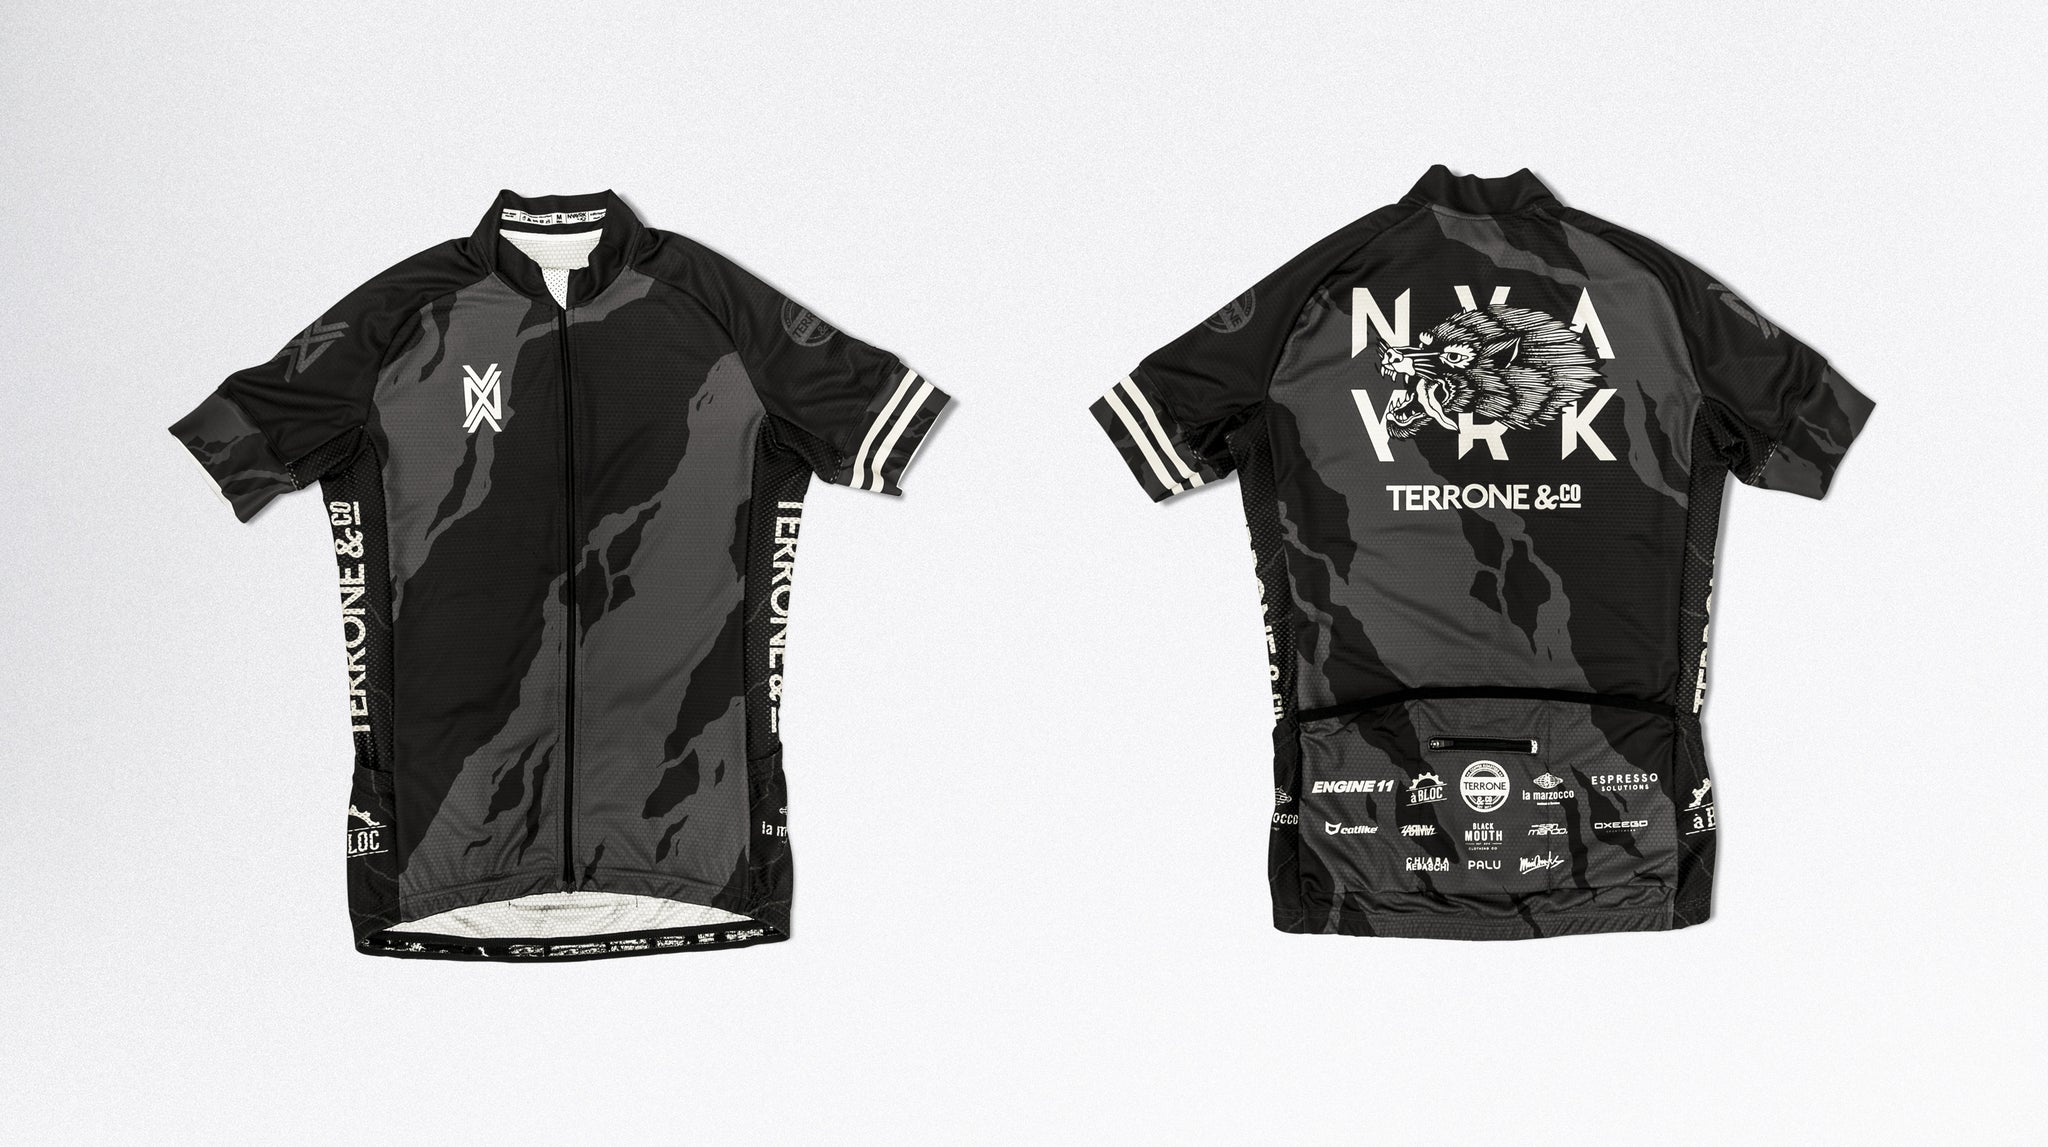 NVAYRK X BLACKMOUTH CO. Cycling Kit